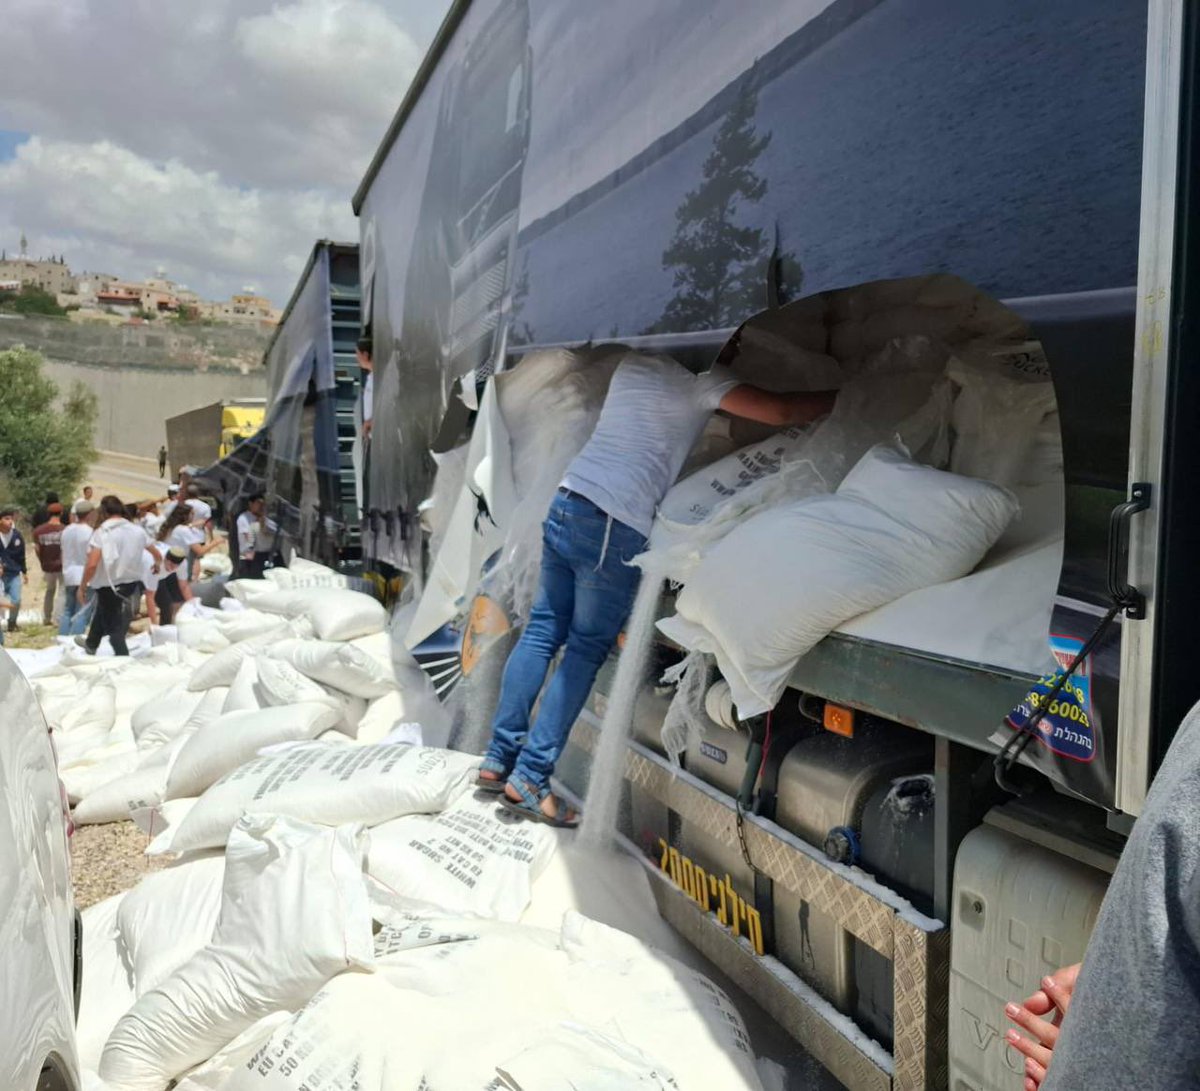 🔴🔴🔴
تحت حماية جنود في الجيش 
مستوطنين يهاجمون قافلة غذائية متجهة نحو قطاع غزة وينهبون محتوياتها.
القافلة قادمة من الأردن